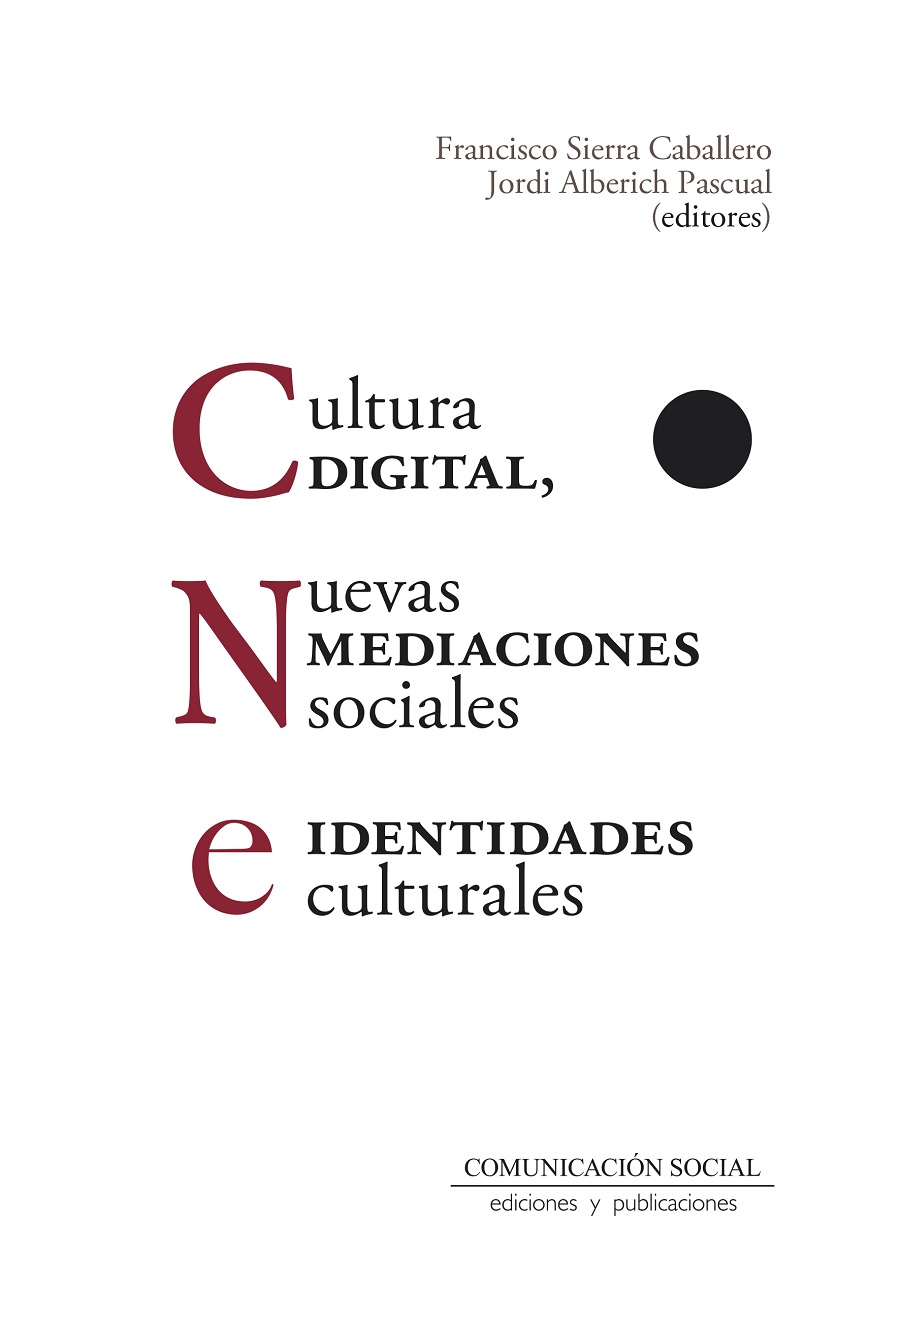 “Cultura digital, nuevas mediaciones sociales e identidades culturales”